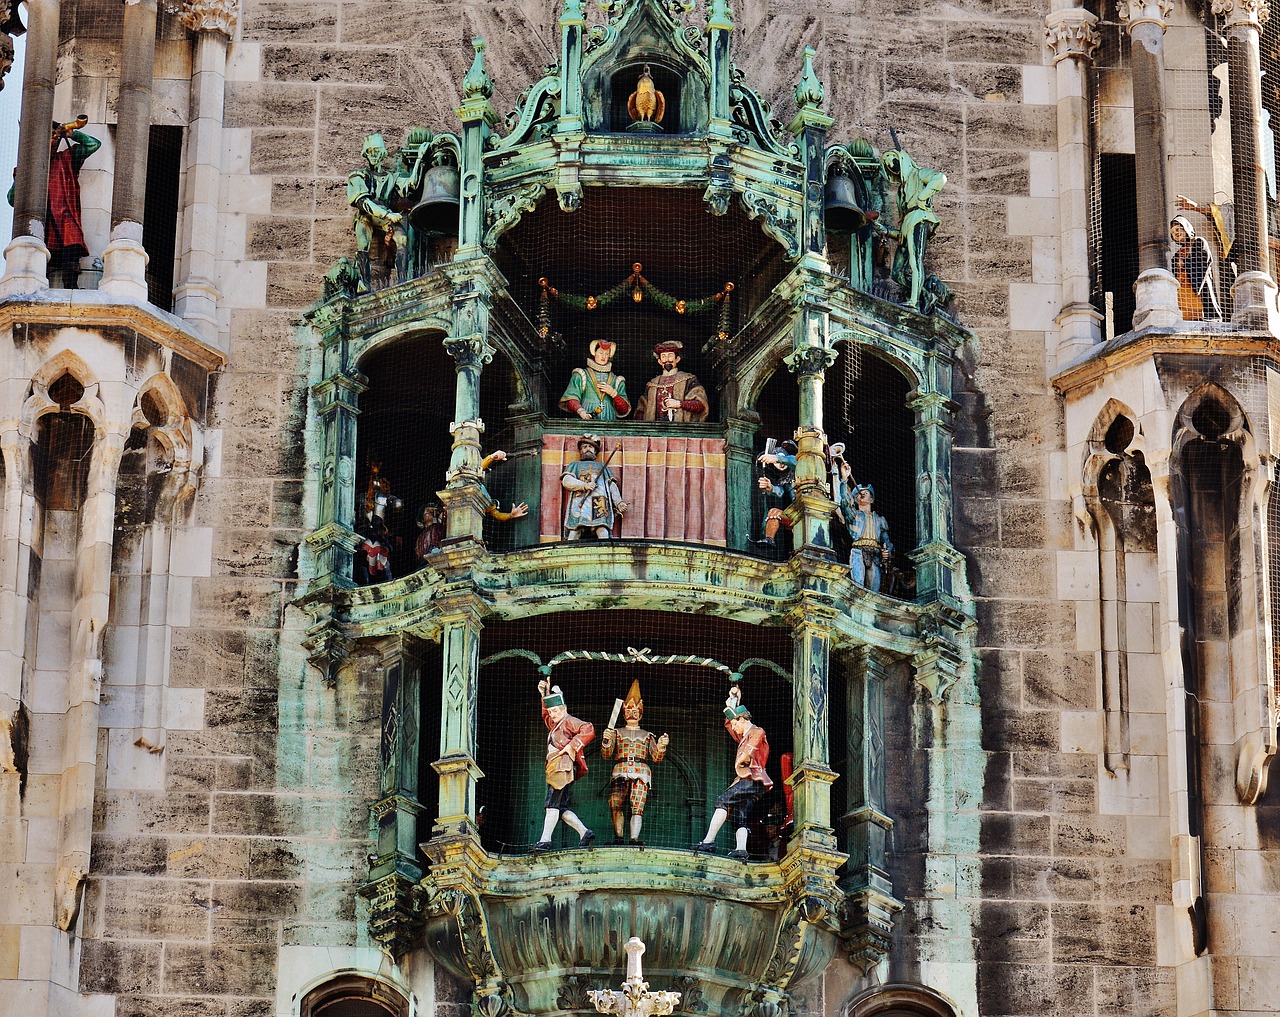 Glockenspiel Rathaus, Munich